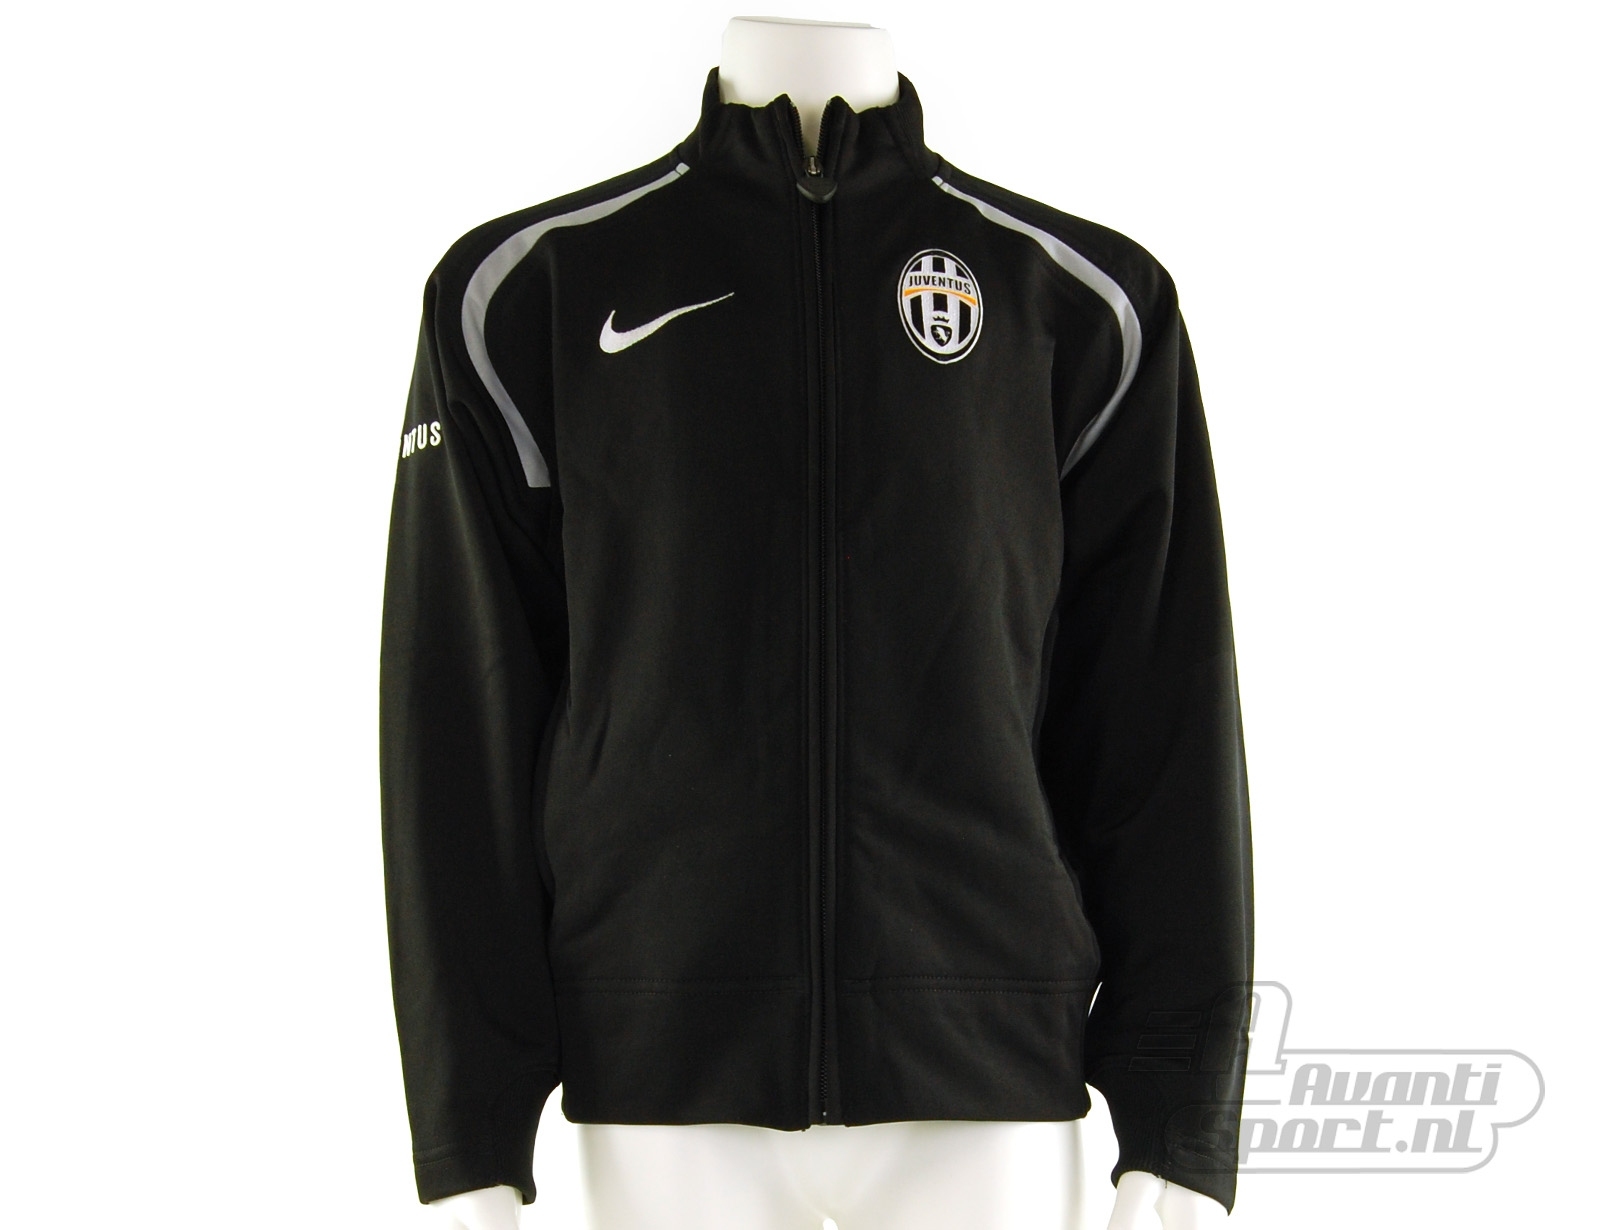 Avantisport - Nike - Juventus Boys Suit - Nike Juventus Trainingspakken